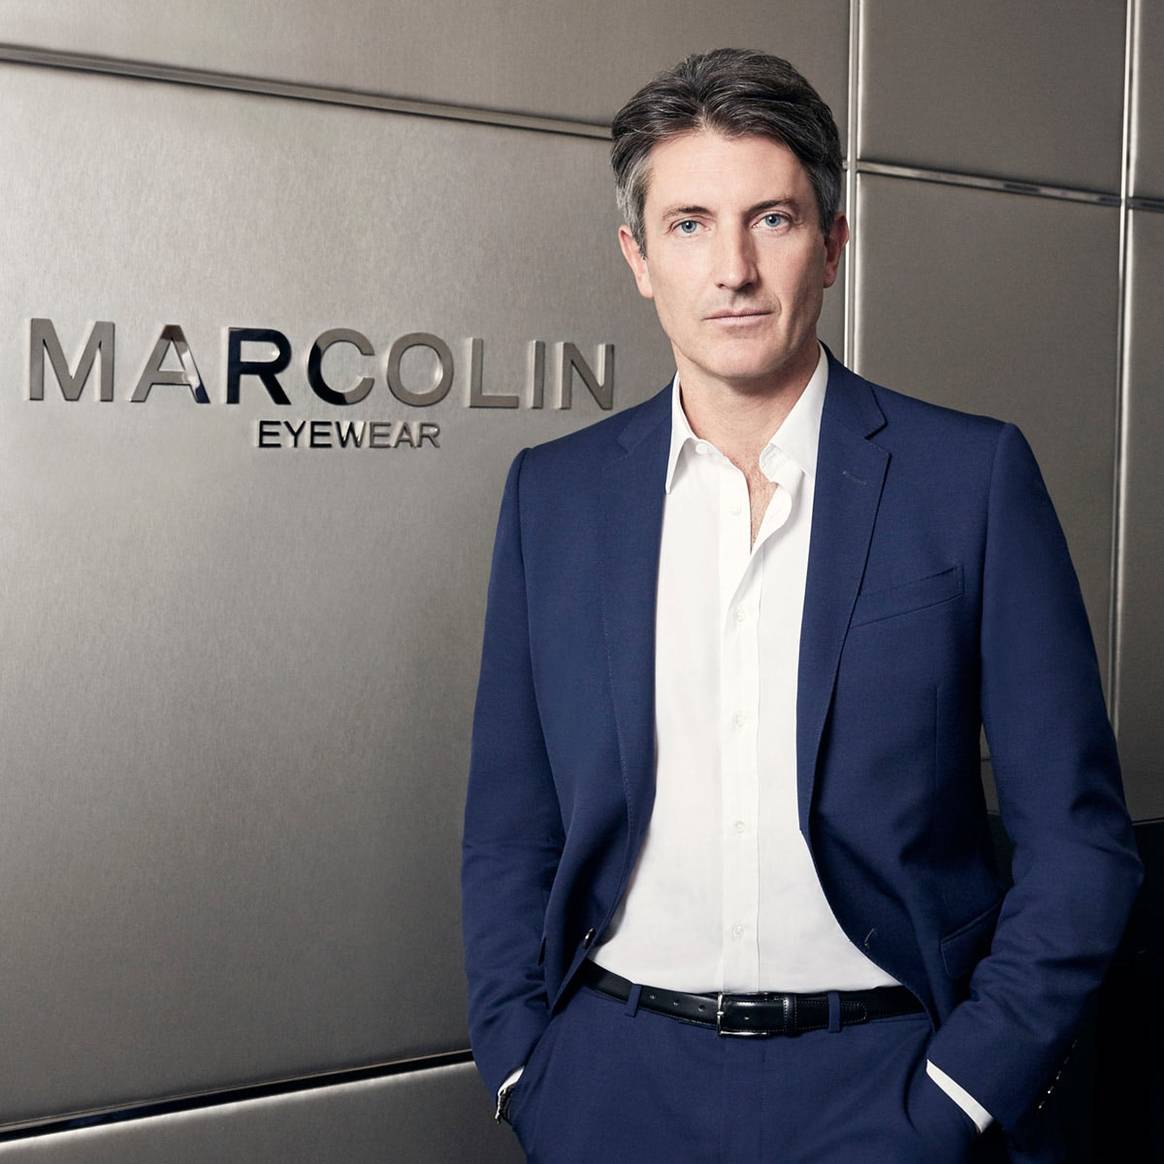 Marcolin llega a un acuerdo con Swatch para desarrollar las líneas eyewear de Omega y Longines